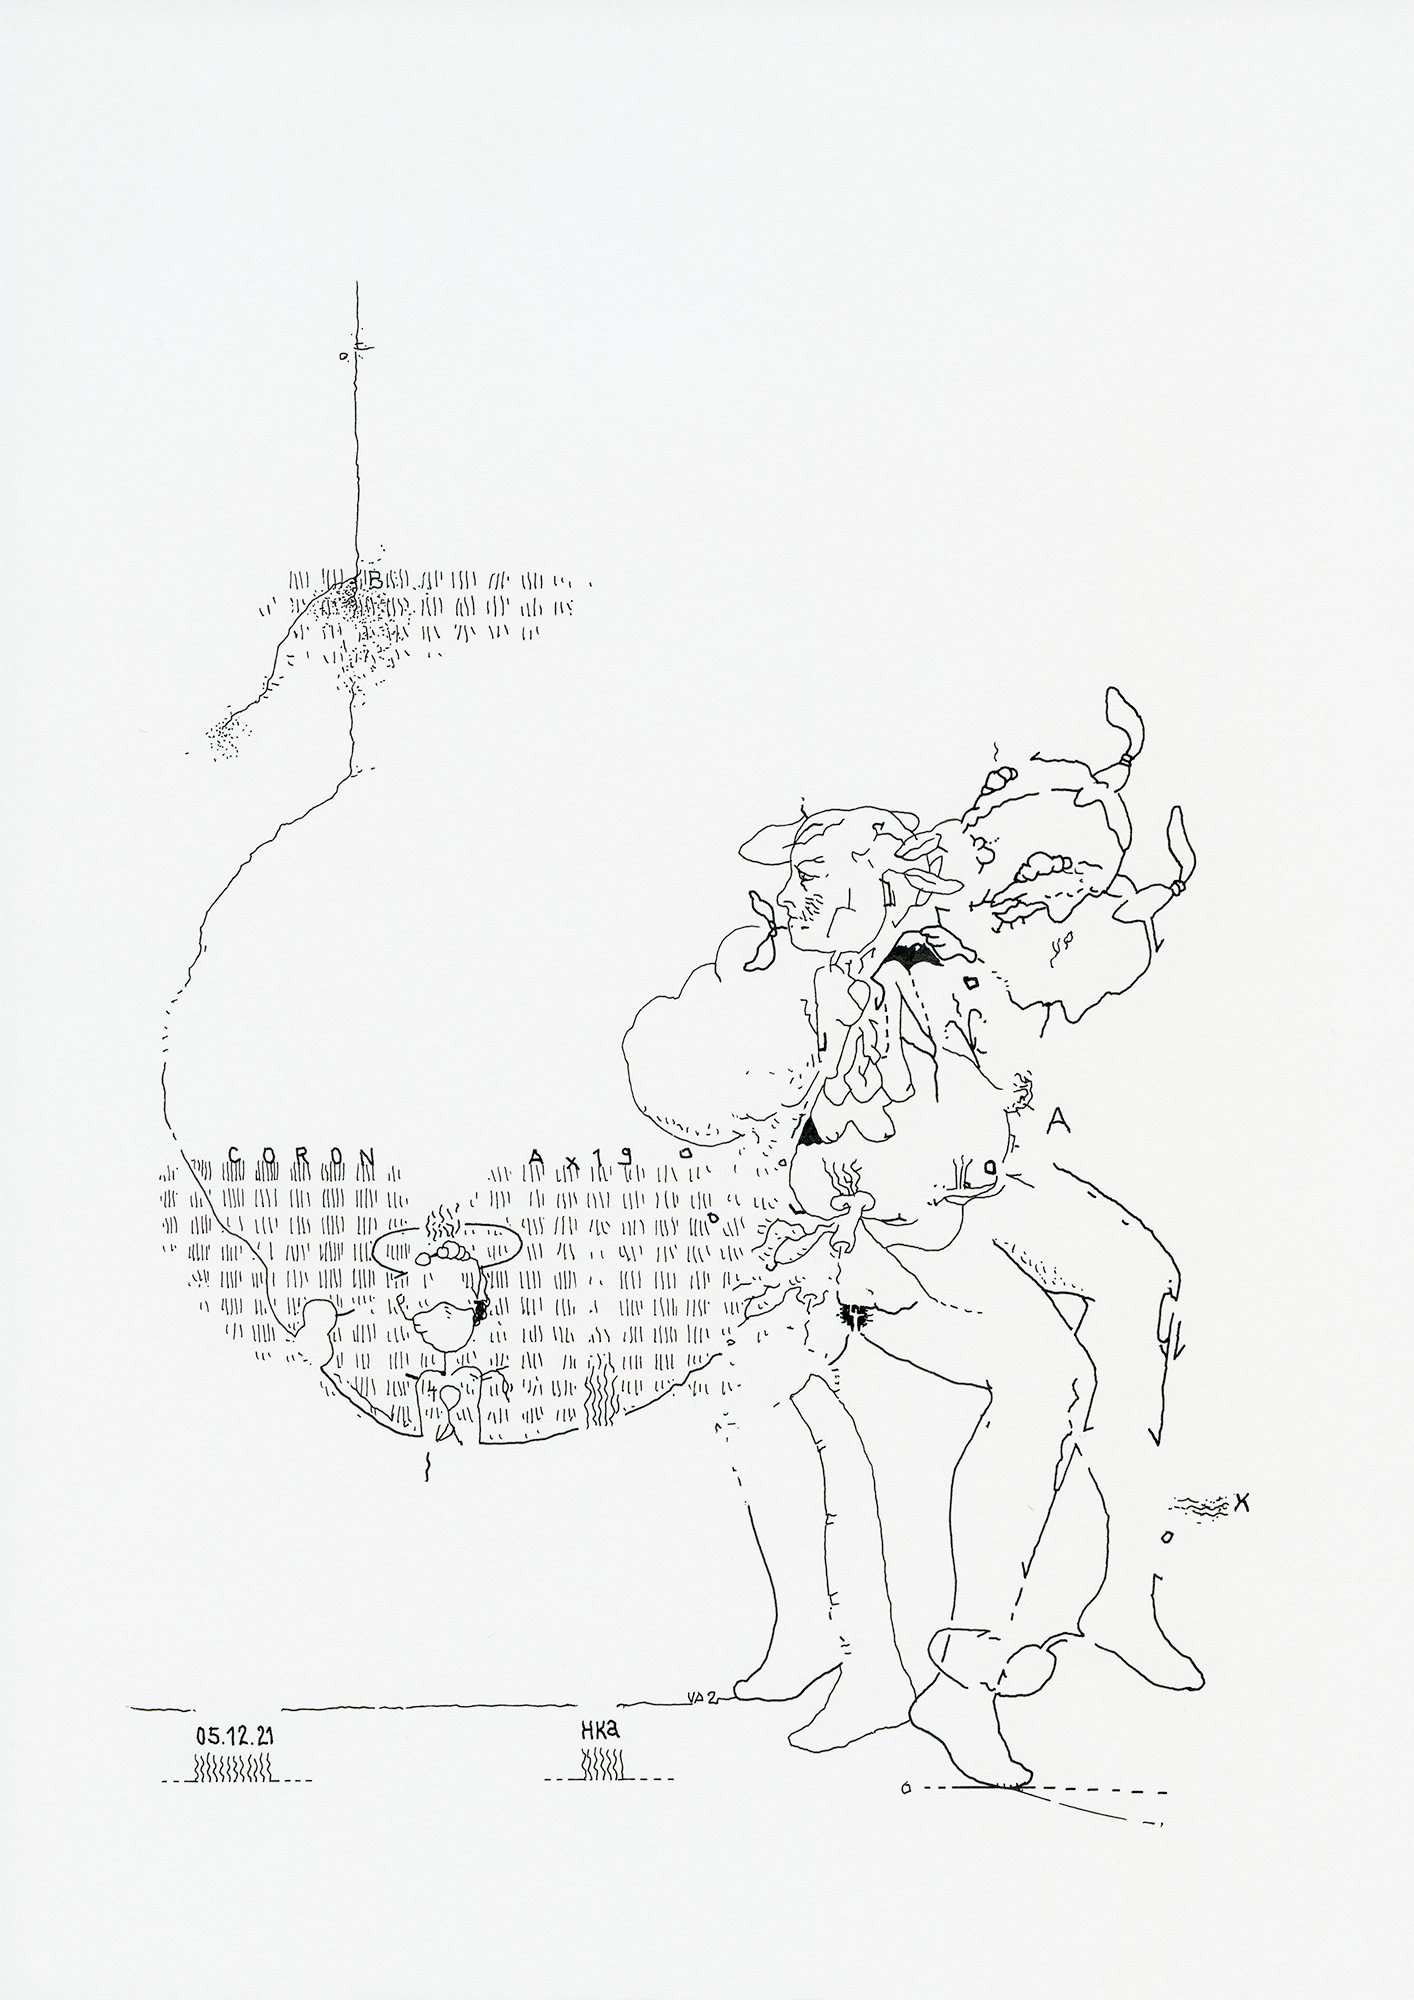 Hannes Kater: Tageszeichnung (Zeichnung/drawing) vom 05.12.2021 (1414 x 2000 Pixel)